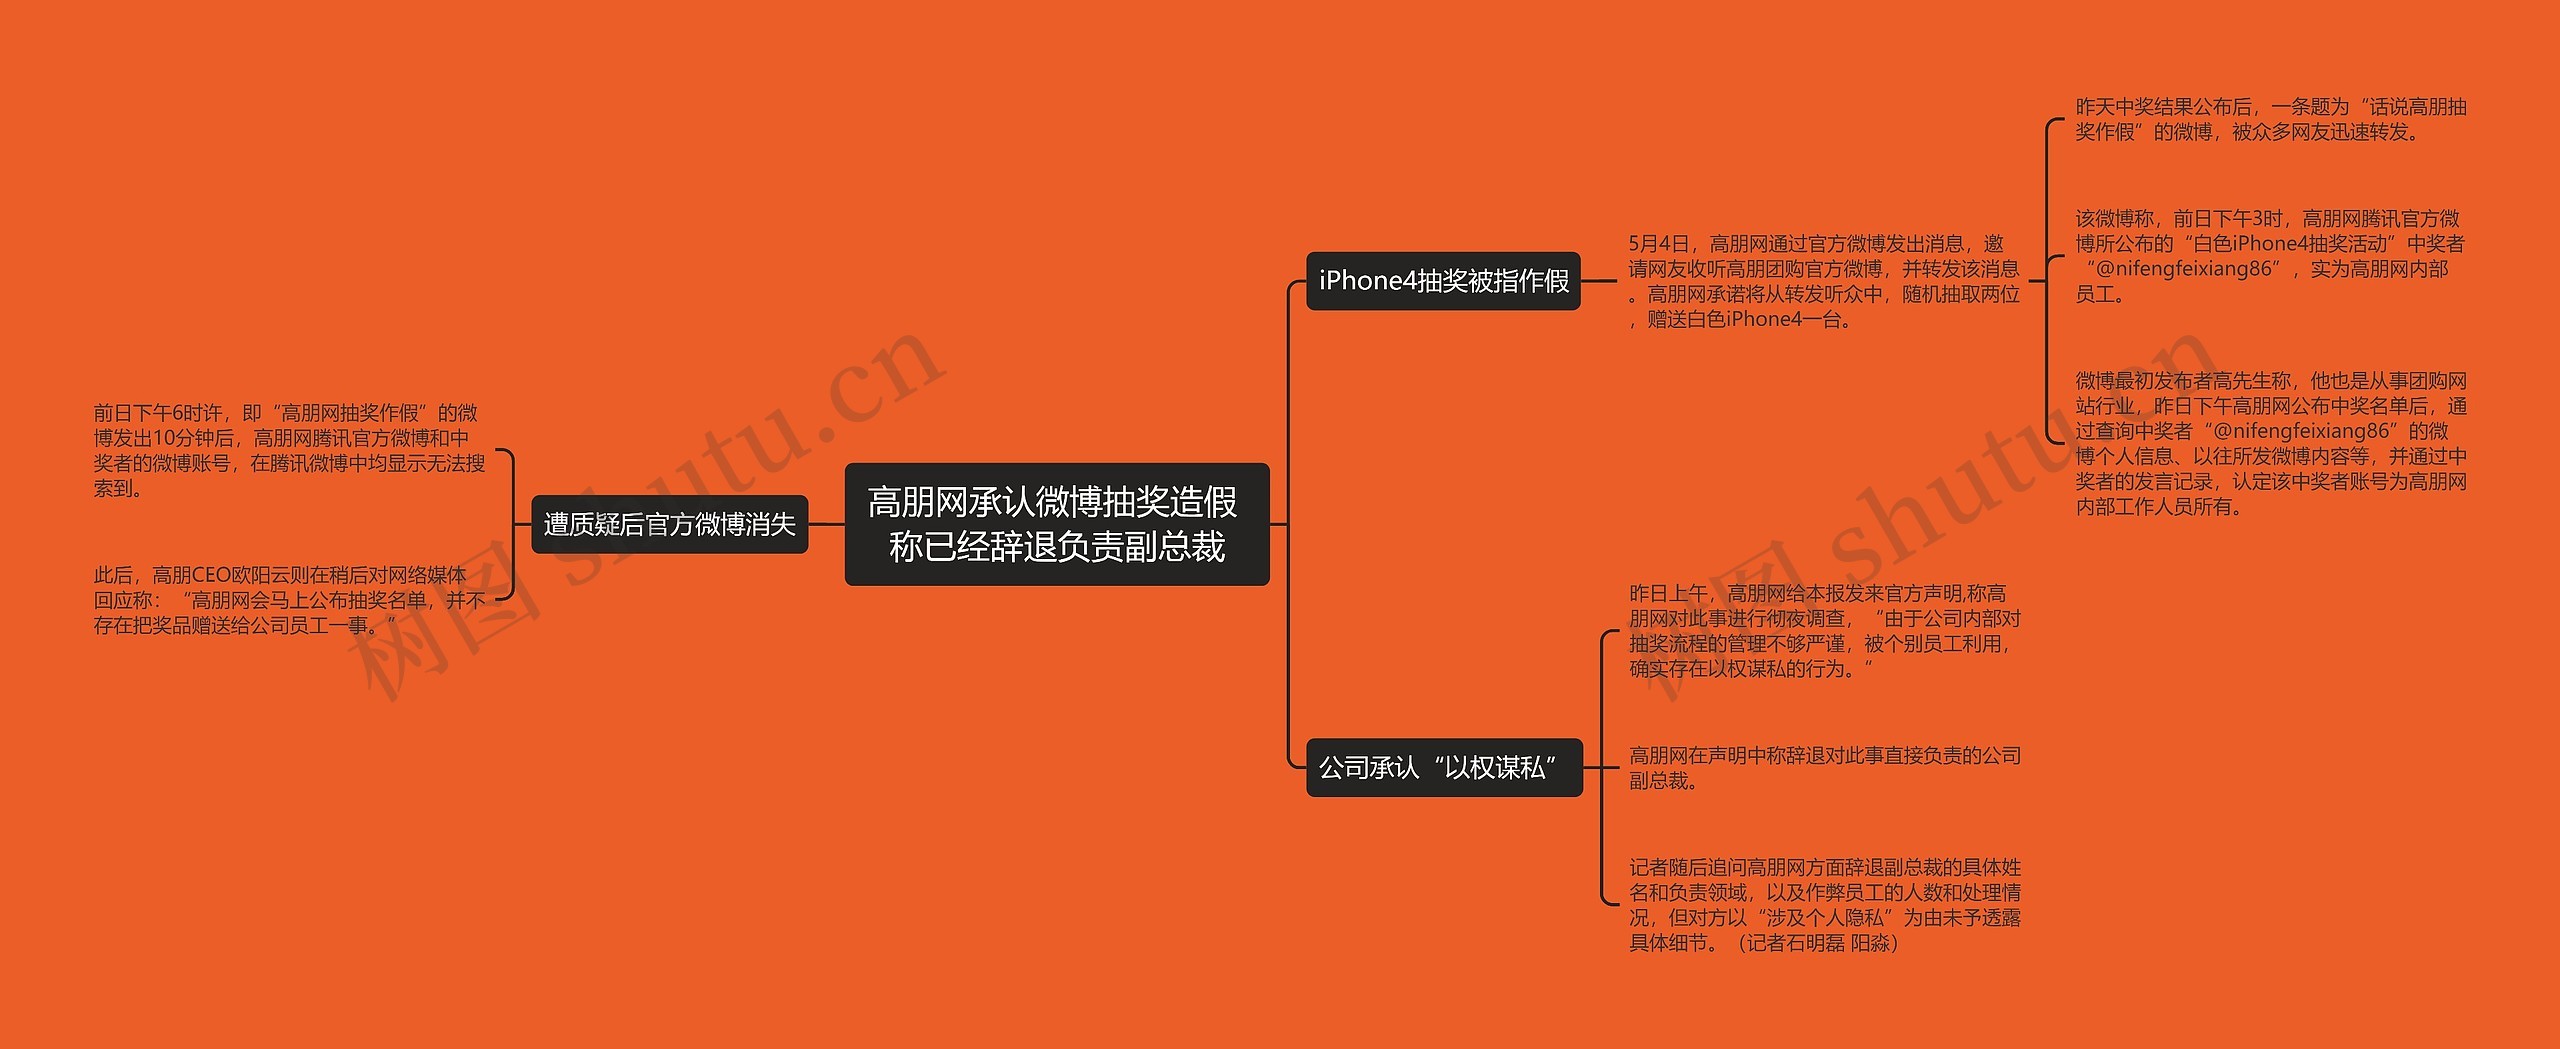 高朋网承认微博抽奖造假 称已经辞退负责副总裁